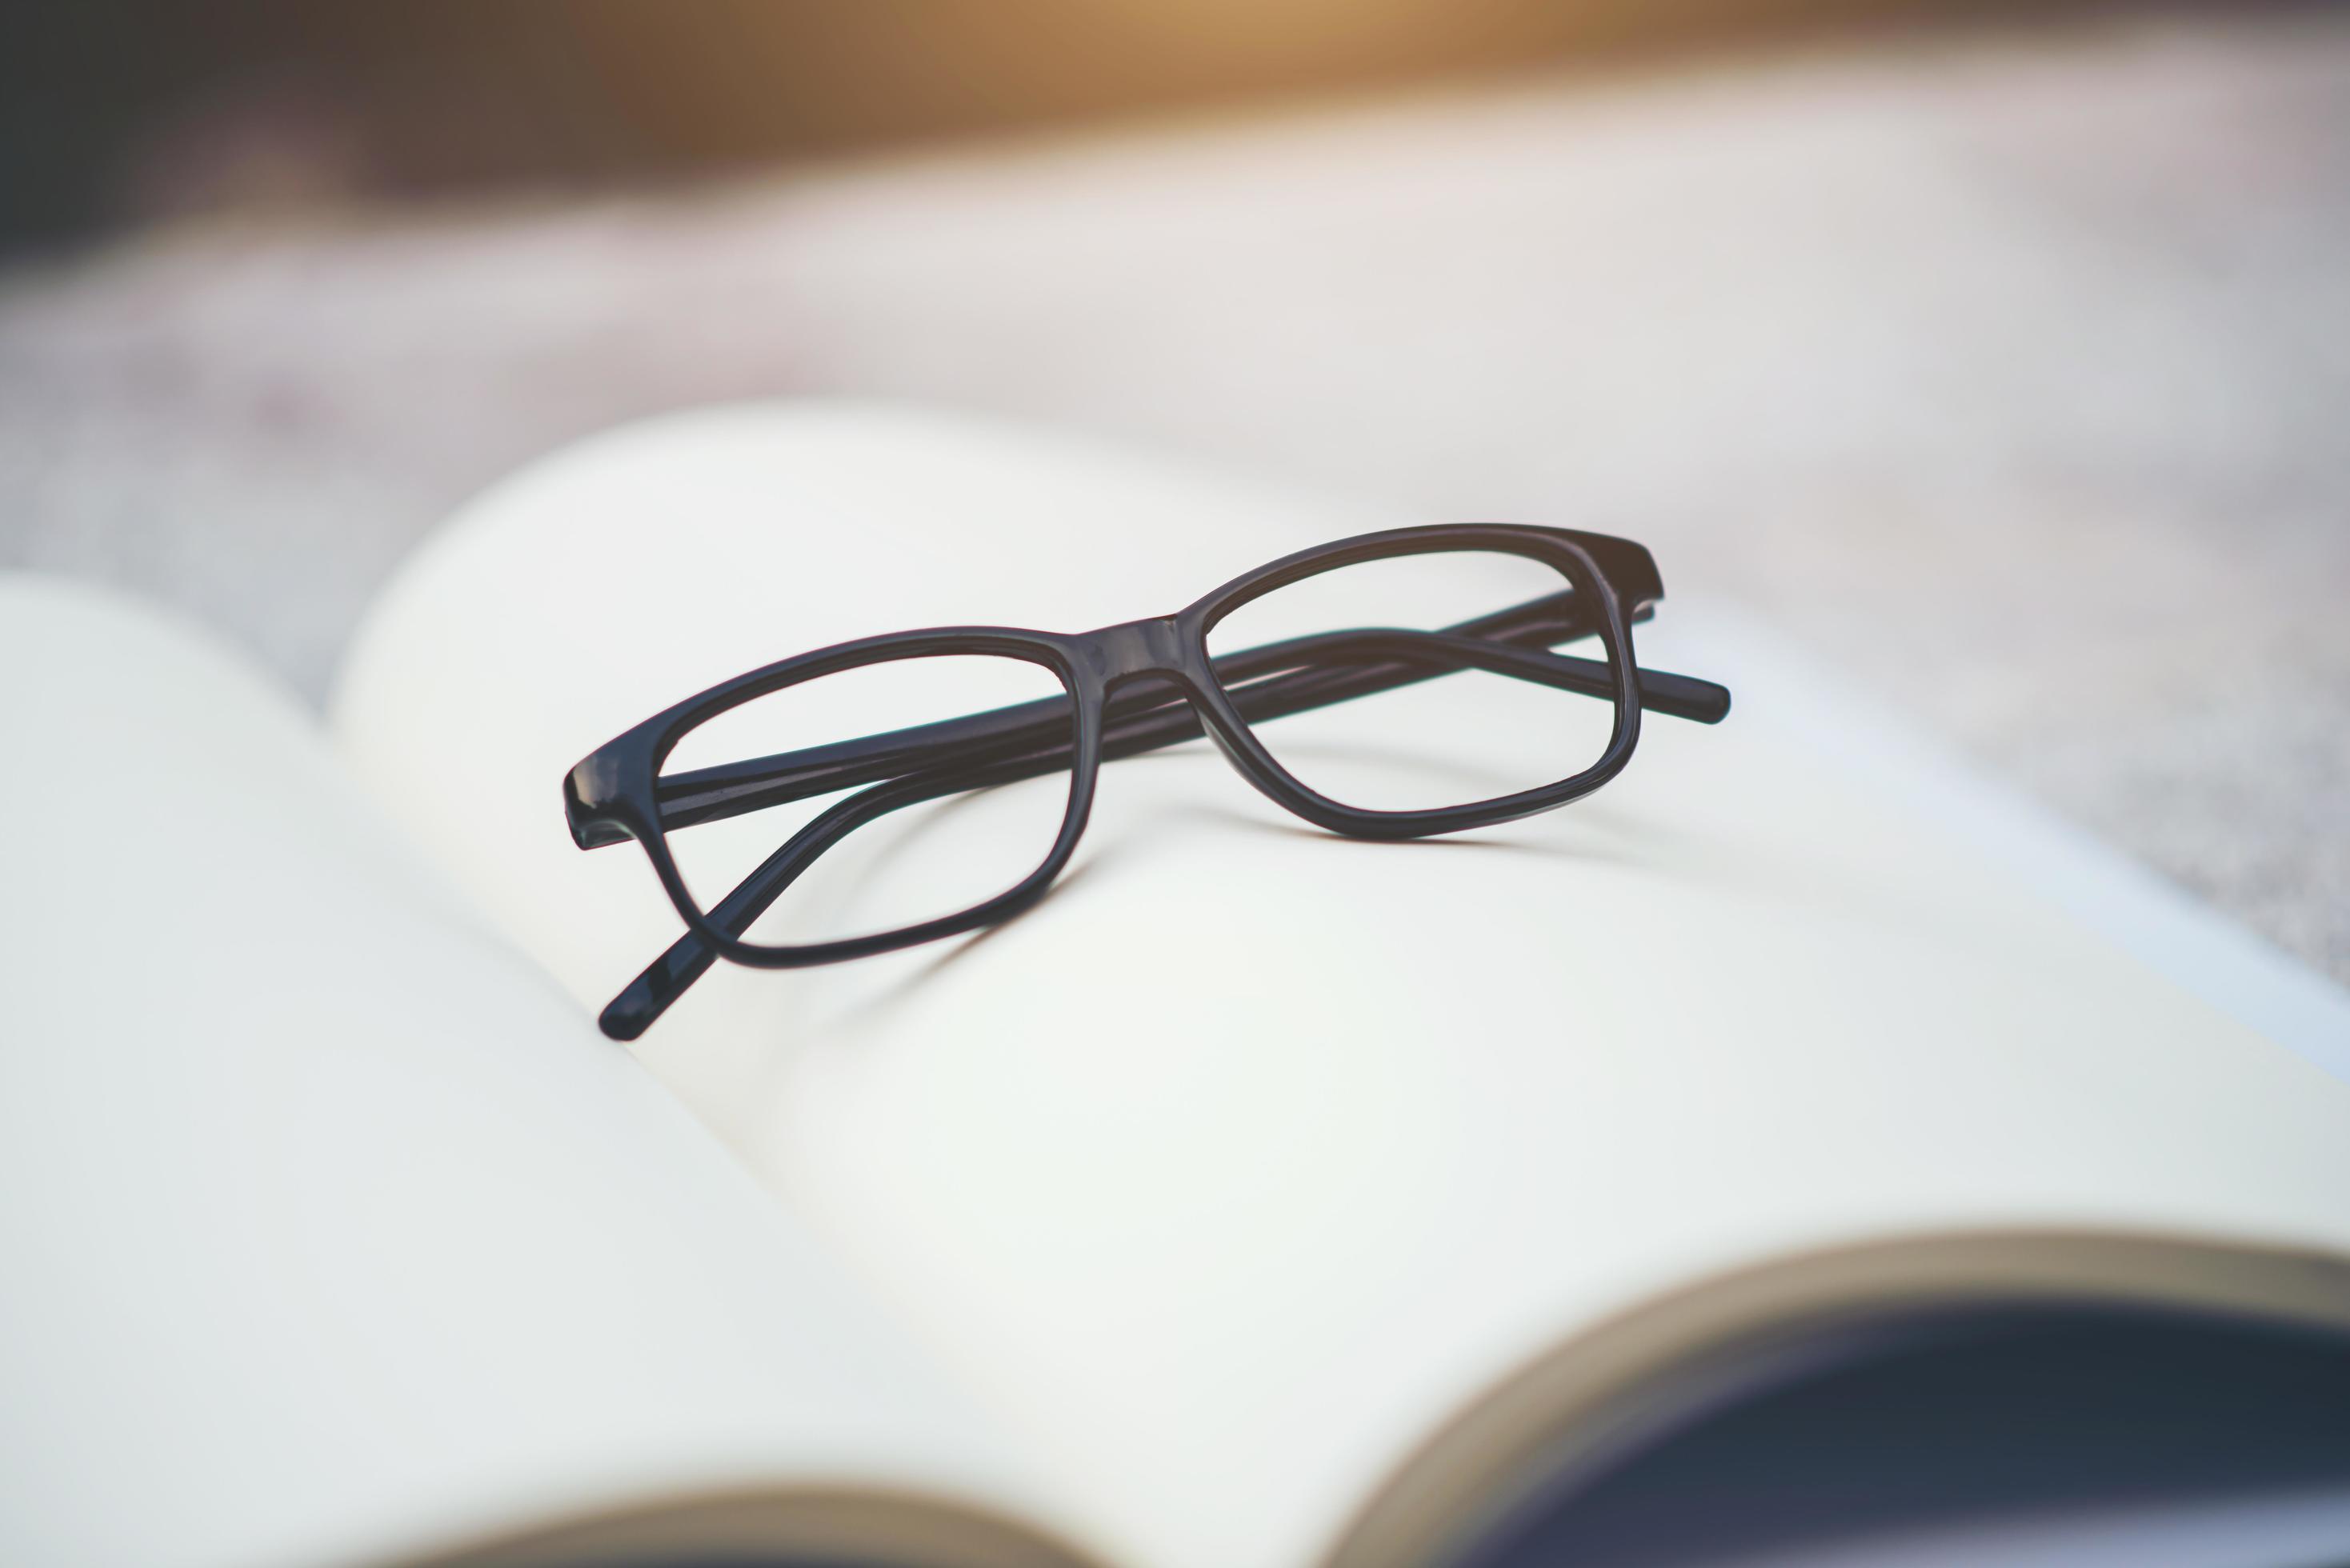 occhiali neri su un libro aperto foto